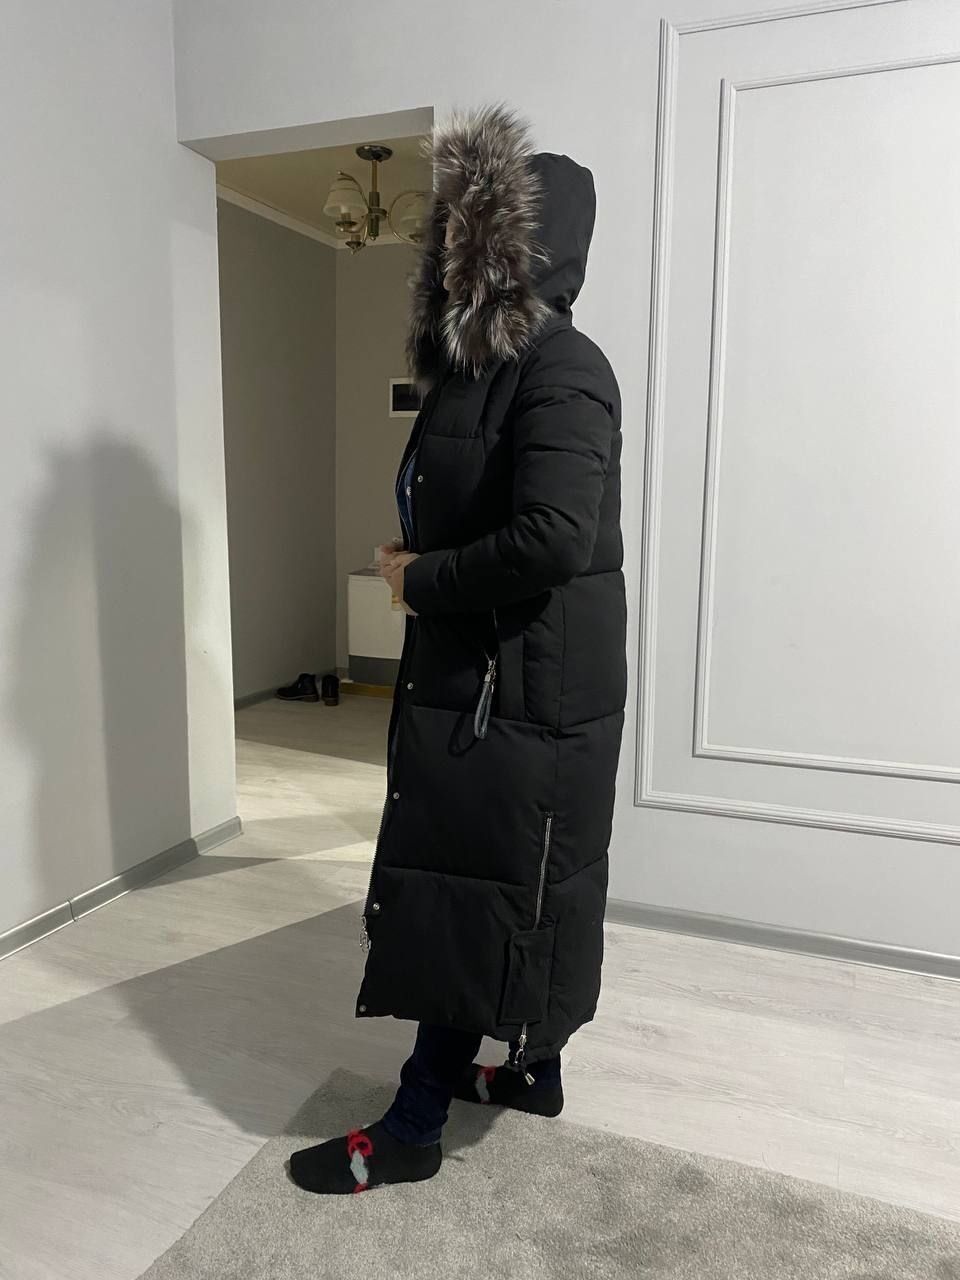 тéплая почти новая куртка зимняя продам за 800000 сум